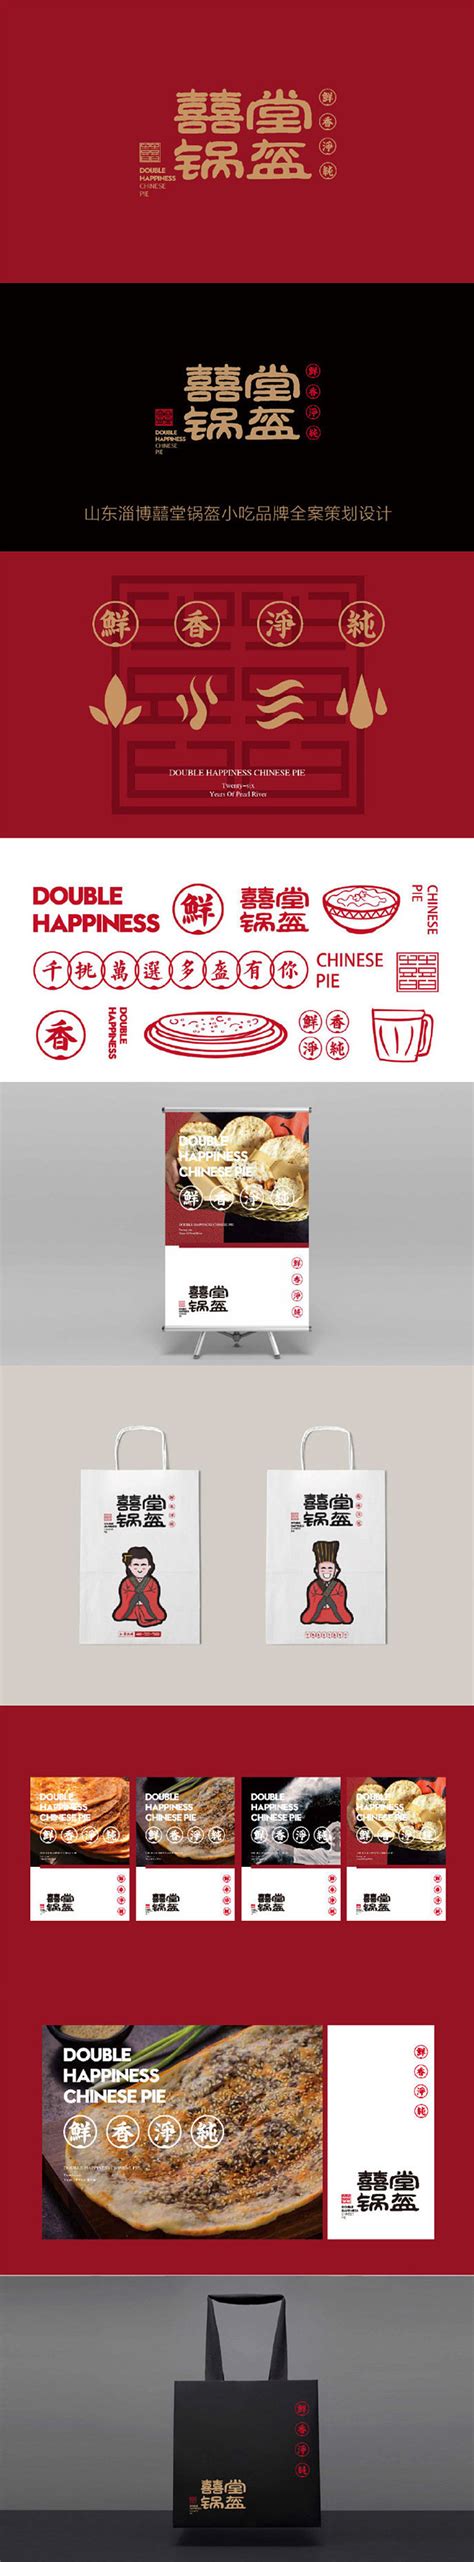 淄博城市品牌形象设计-古田路9号-品牌创意/版权保护平台